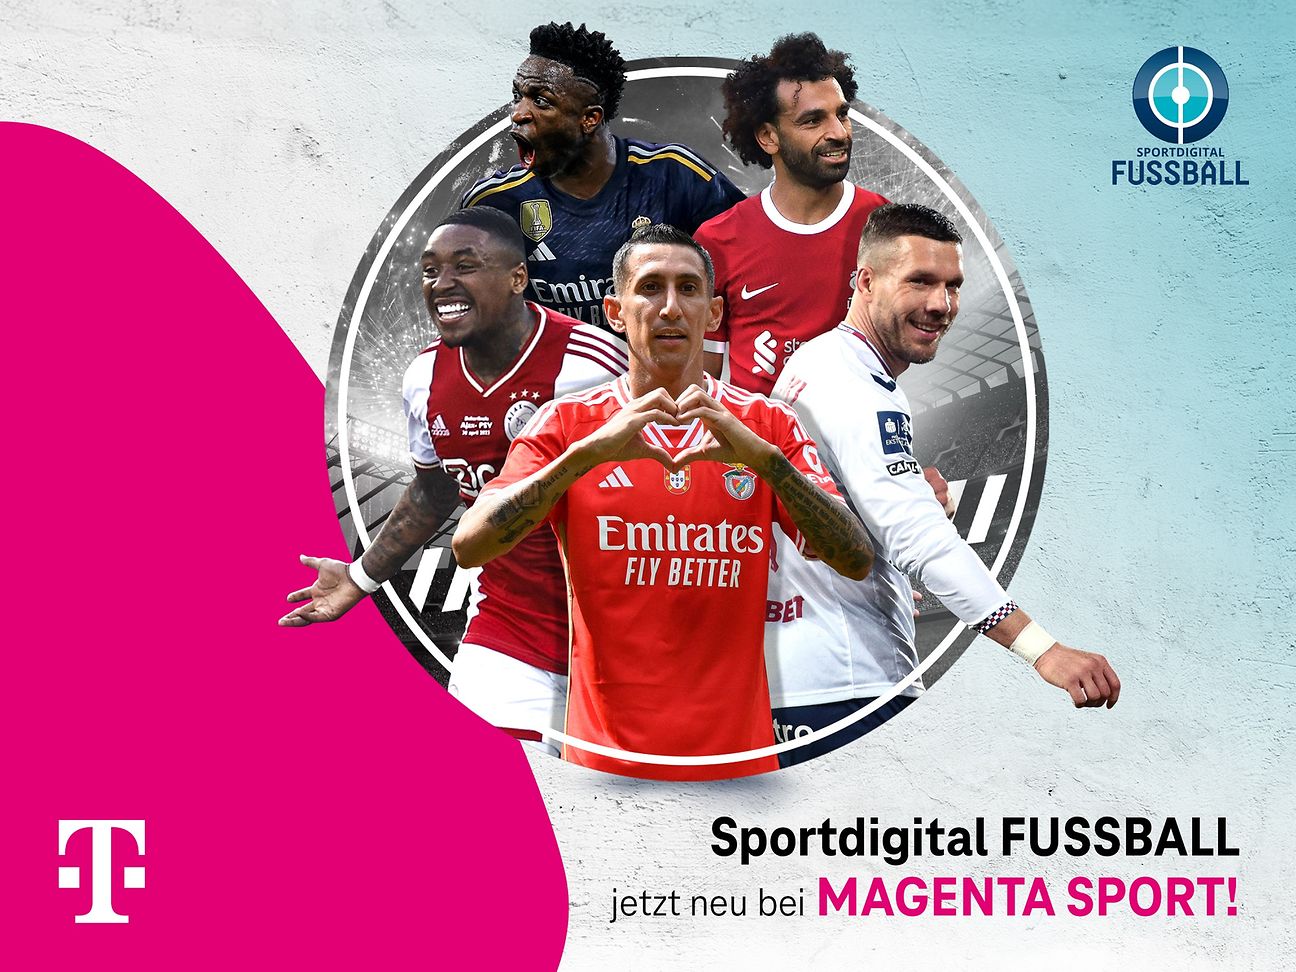 Rund 1.000 Live-Spiele zusätzlich! MagentaSport integriert Sportdigital FUSSBALL komplett Deutsche Telekom